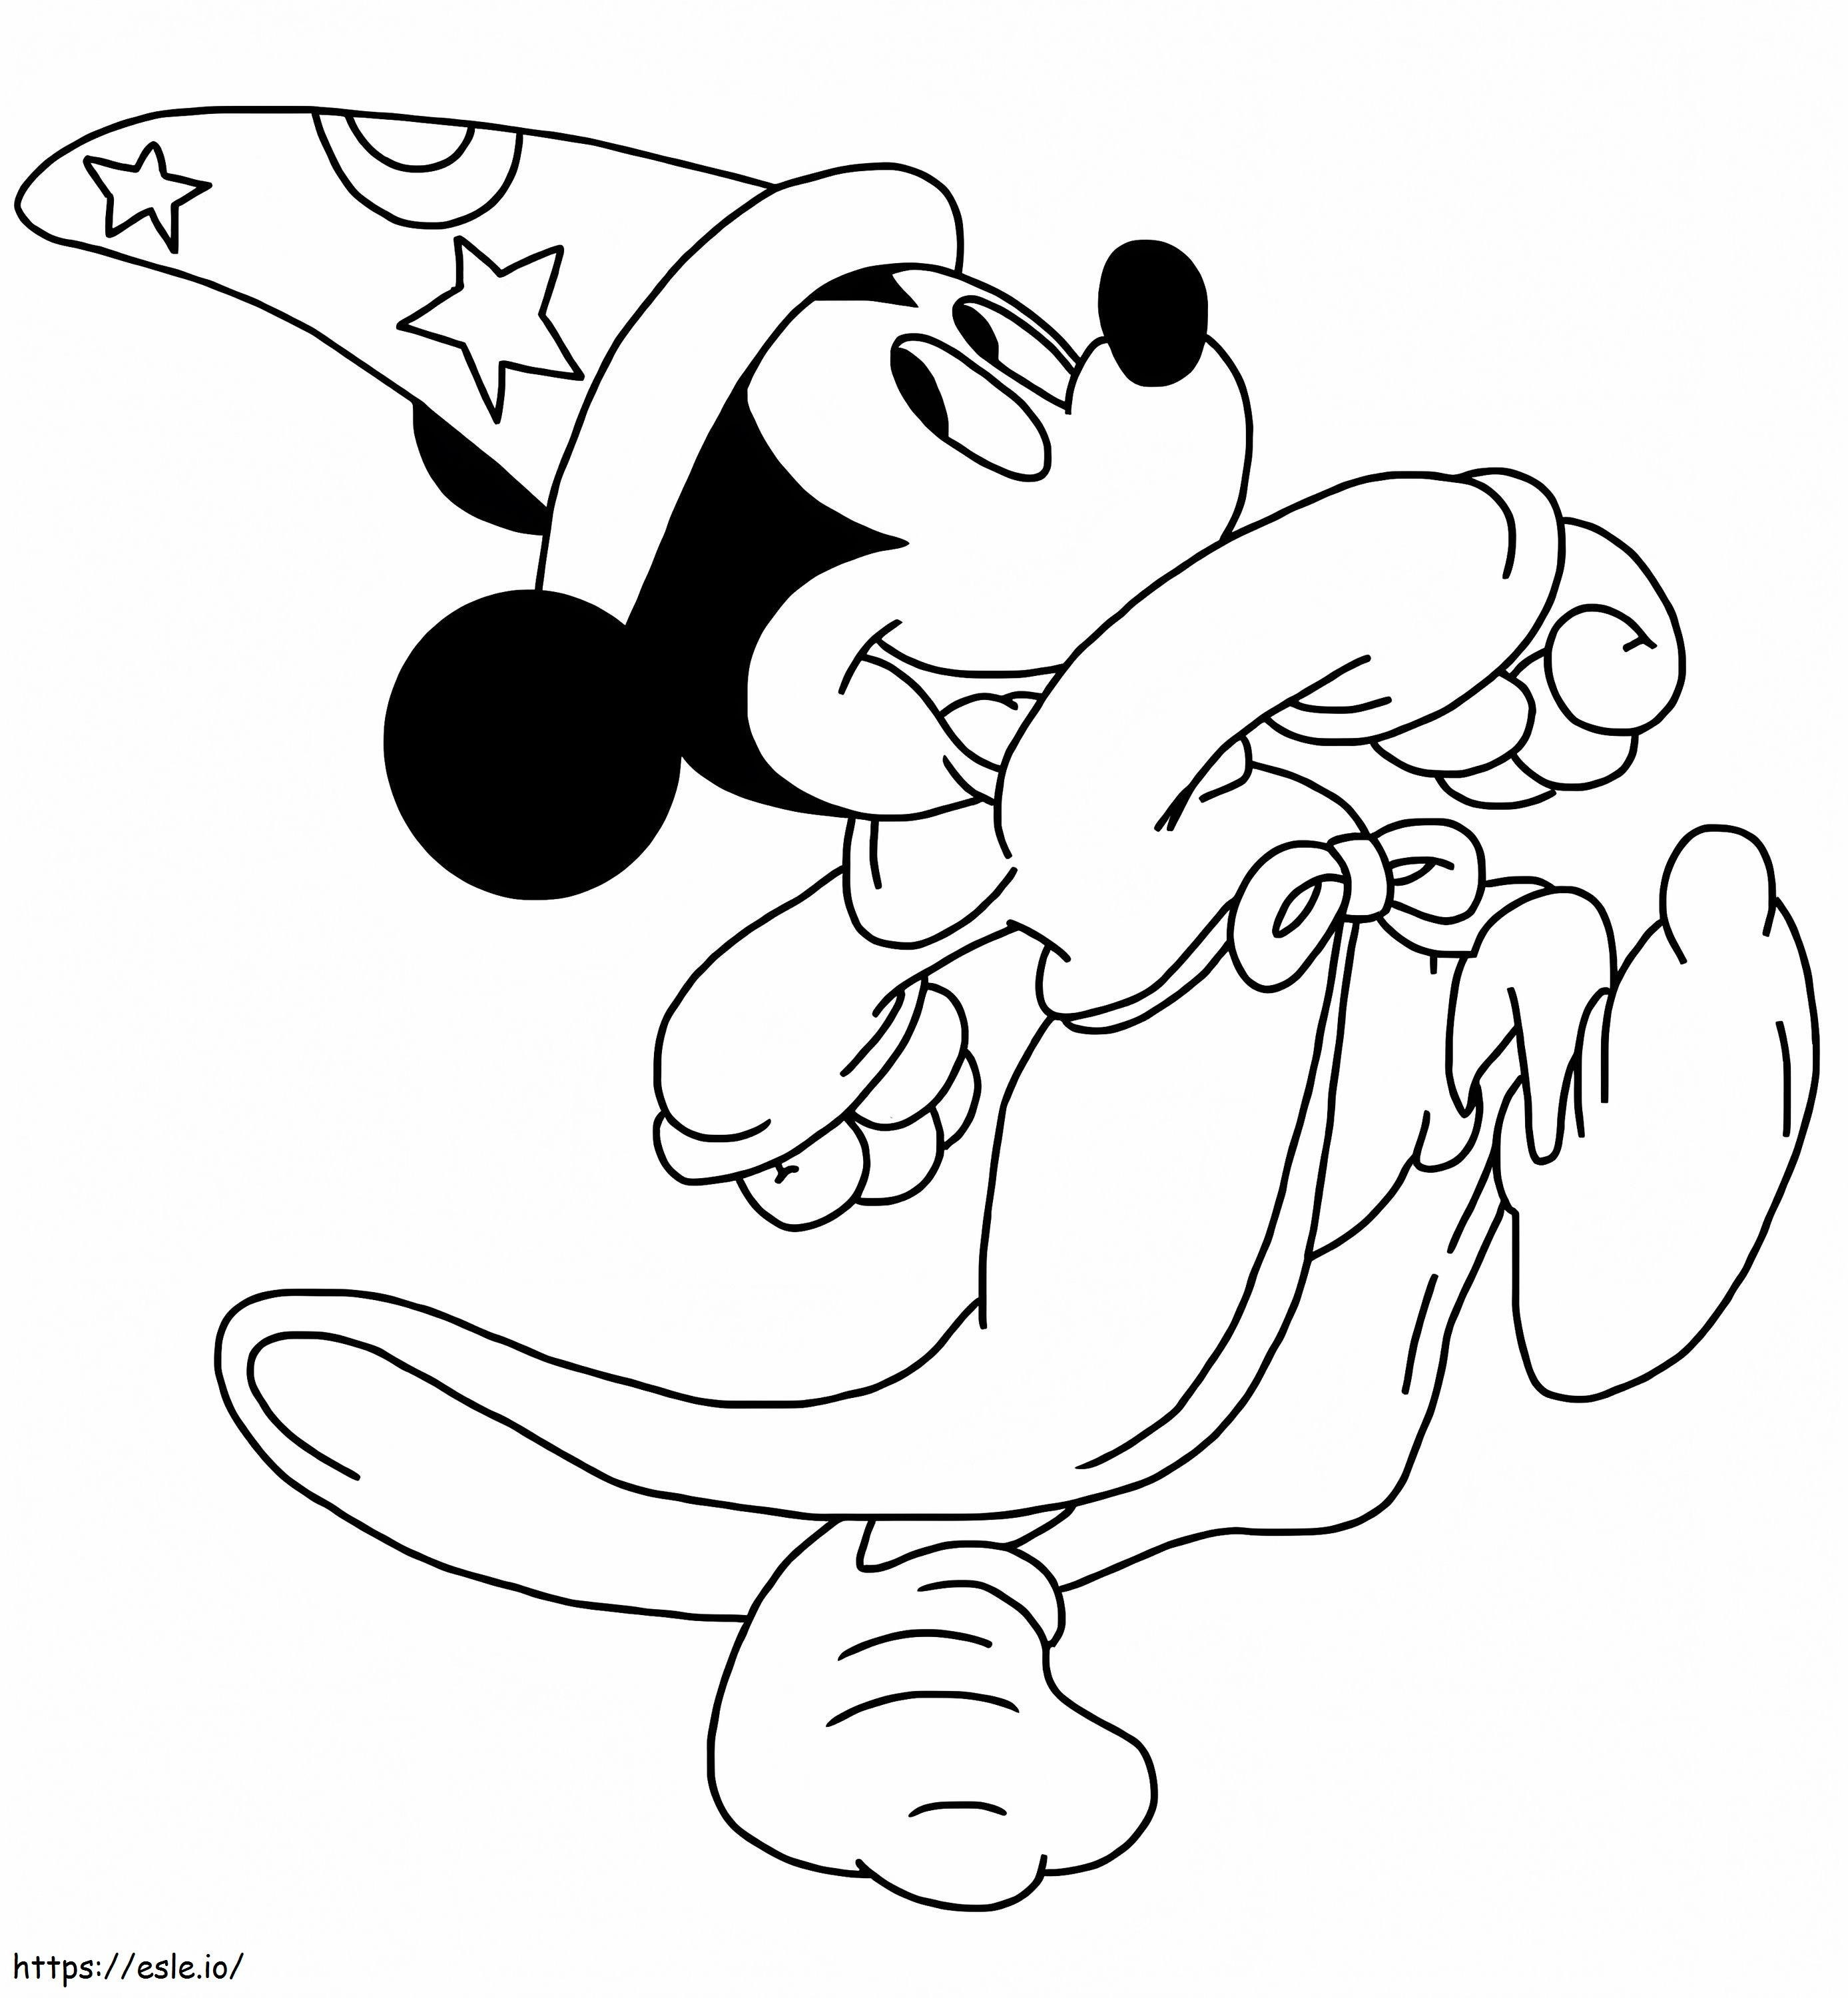 Coloriage Le sorcier Mickey Mouse à imprimer dessin